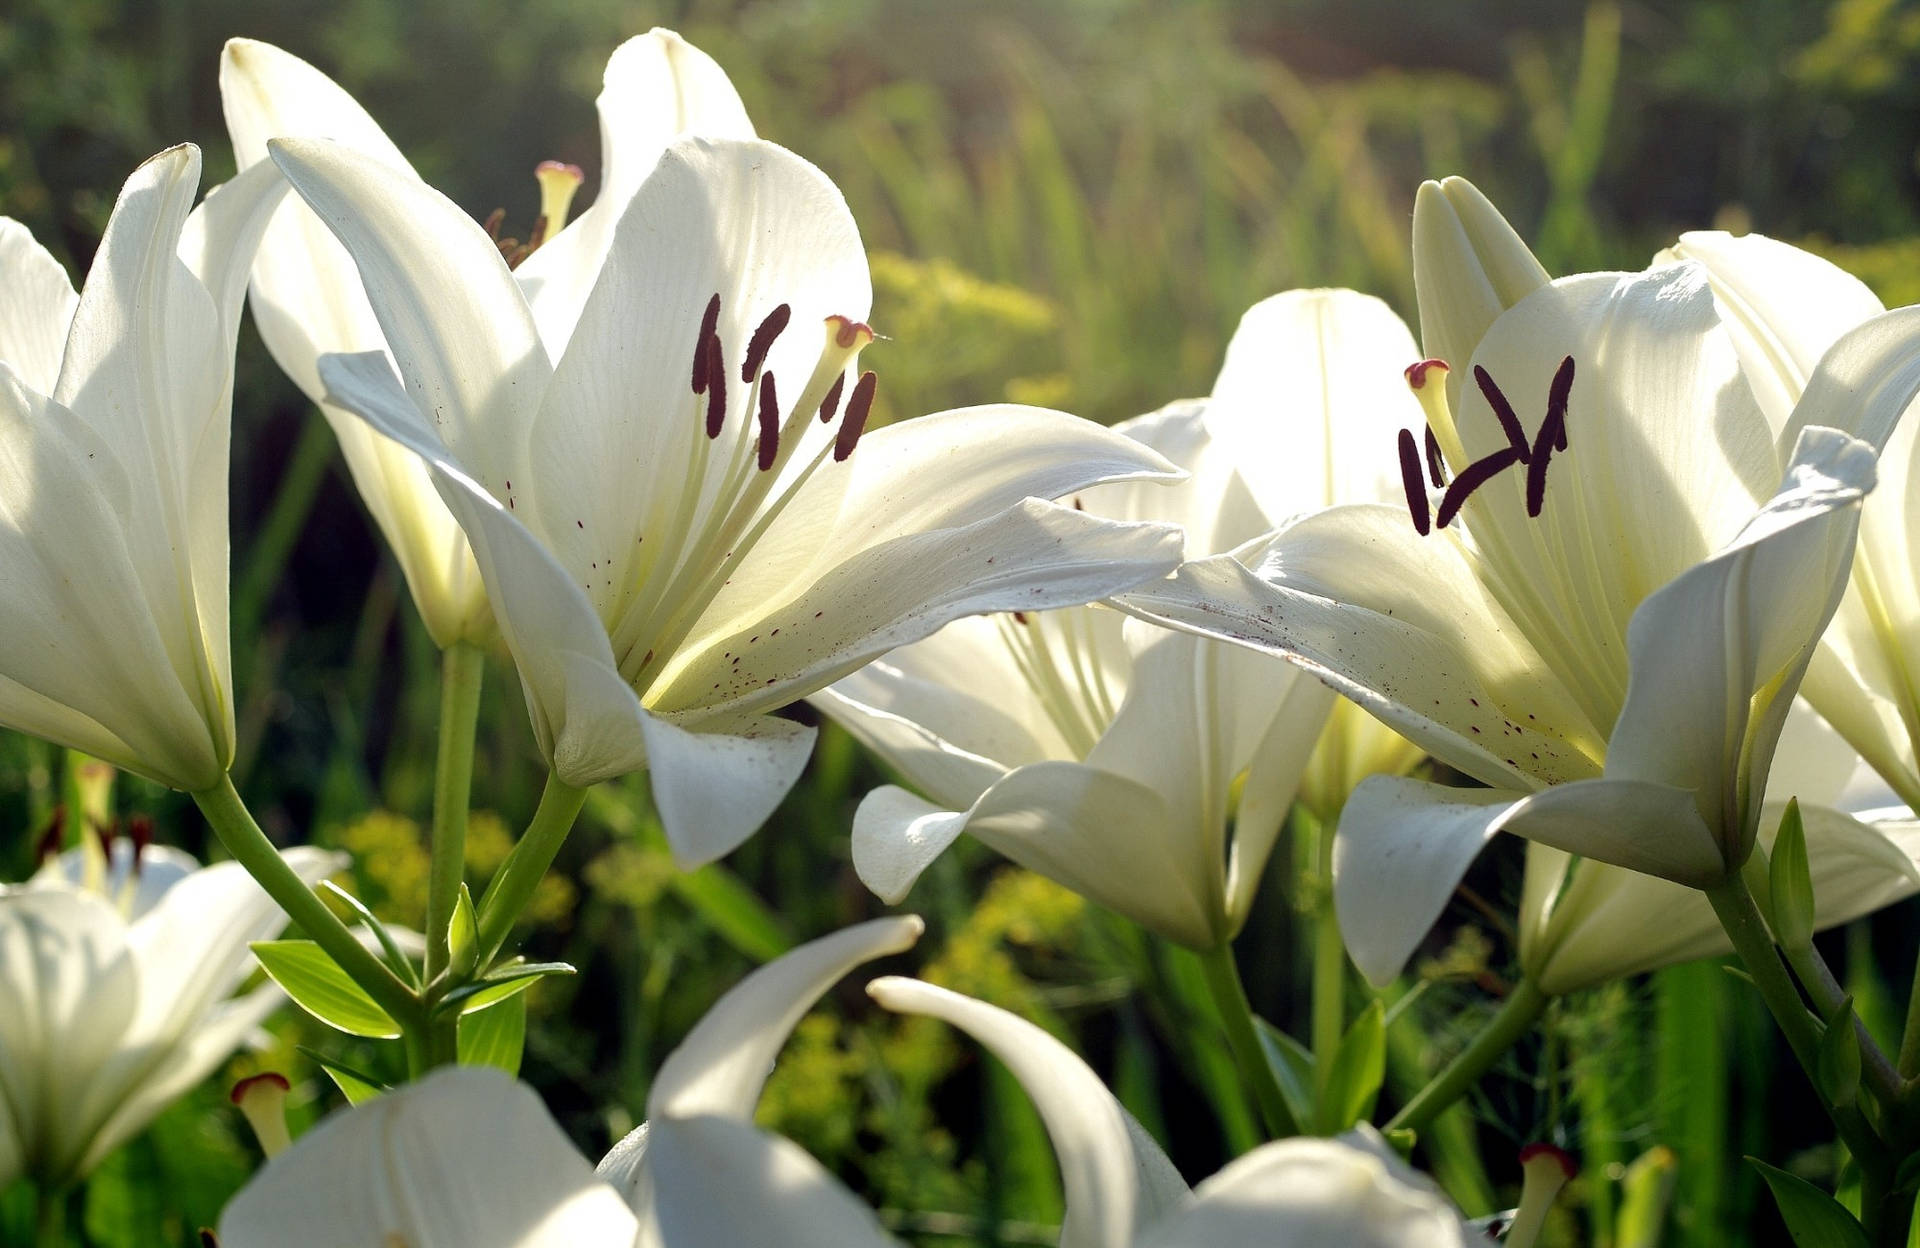 Caption: Elegant White Lily In Full Bloom